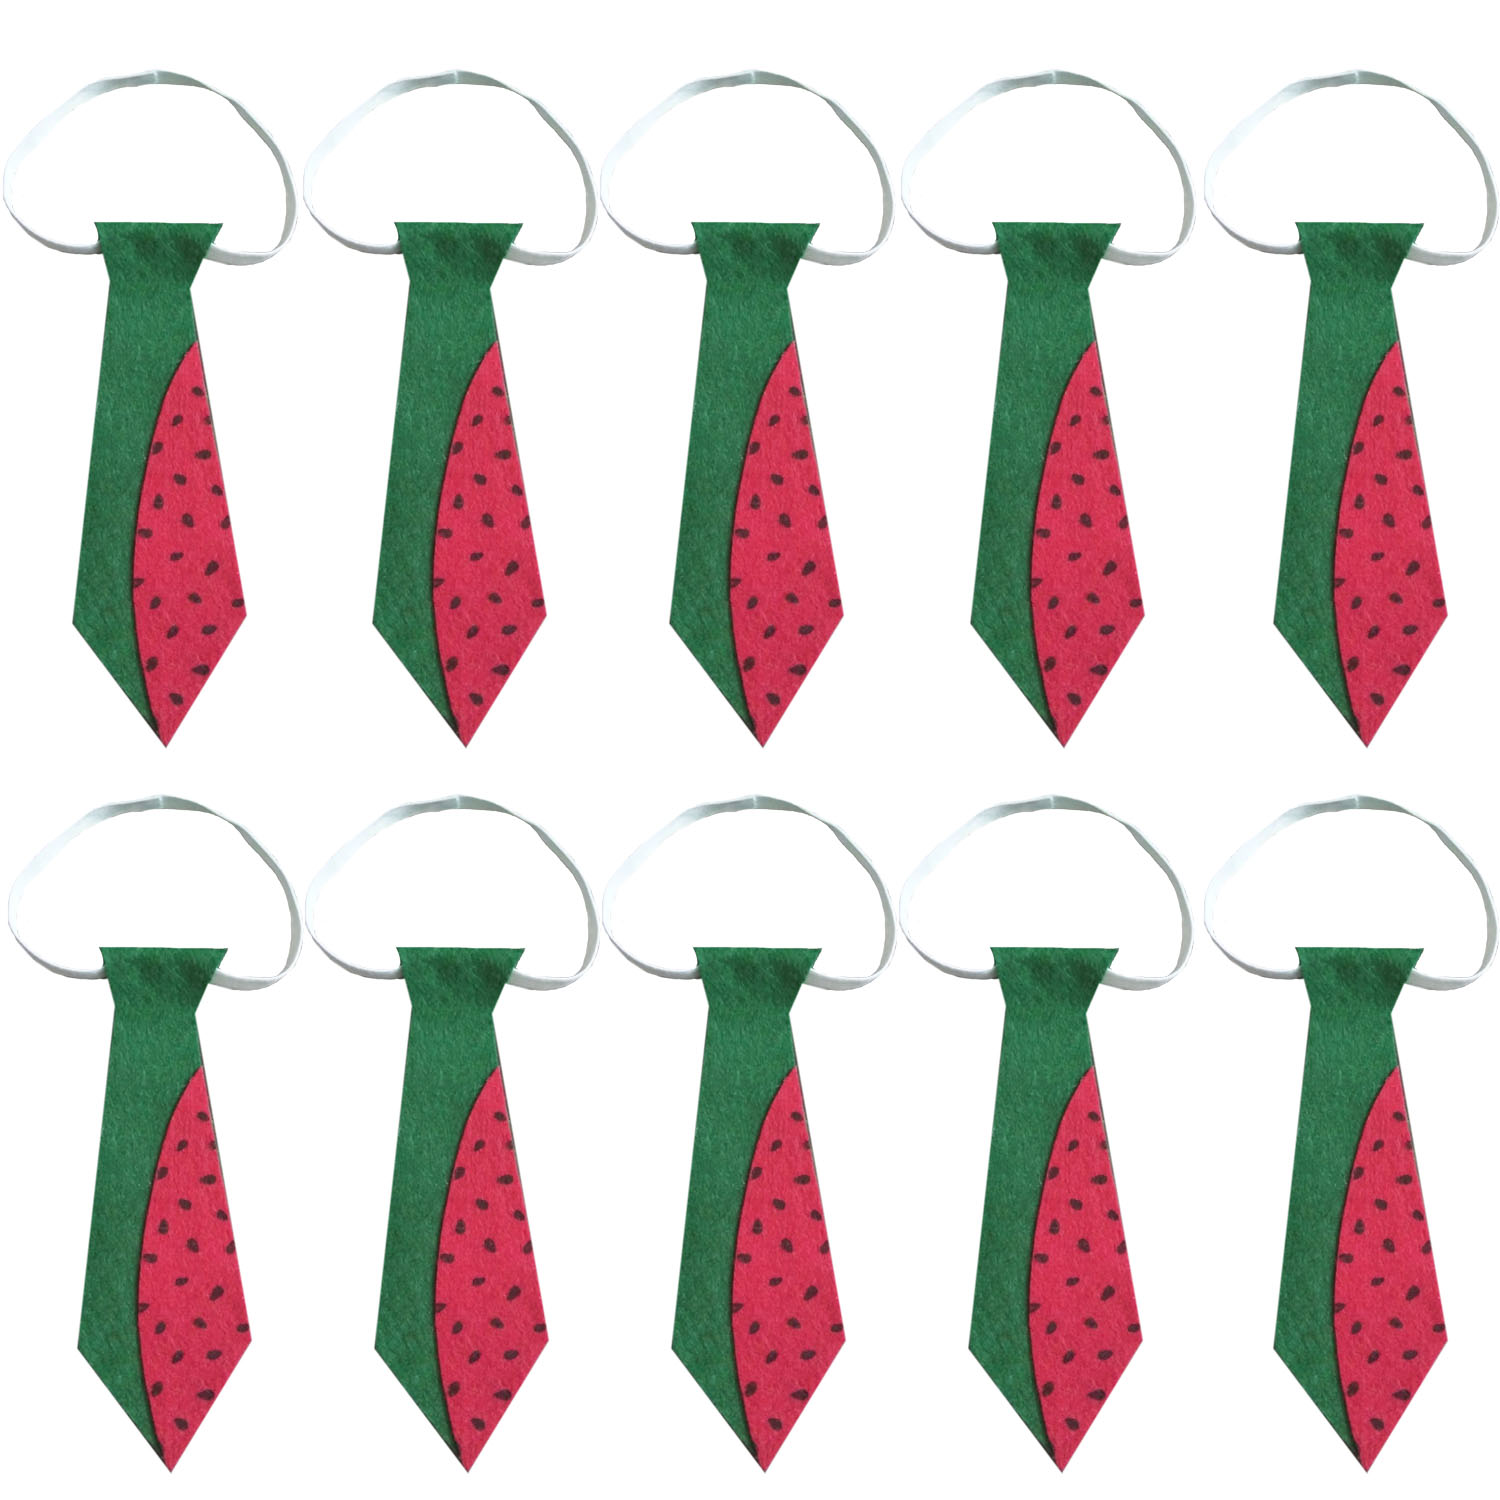 کراوات پسرانه طرح هندوانه مدل یلدا کد 1001 بسته 10 عددی